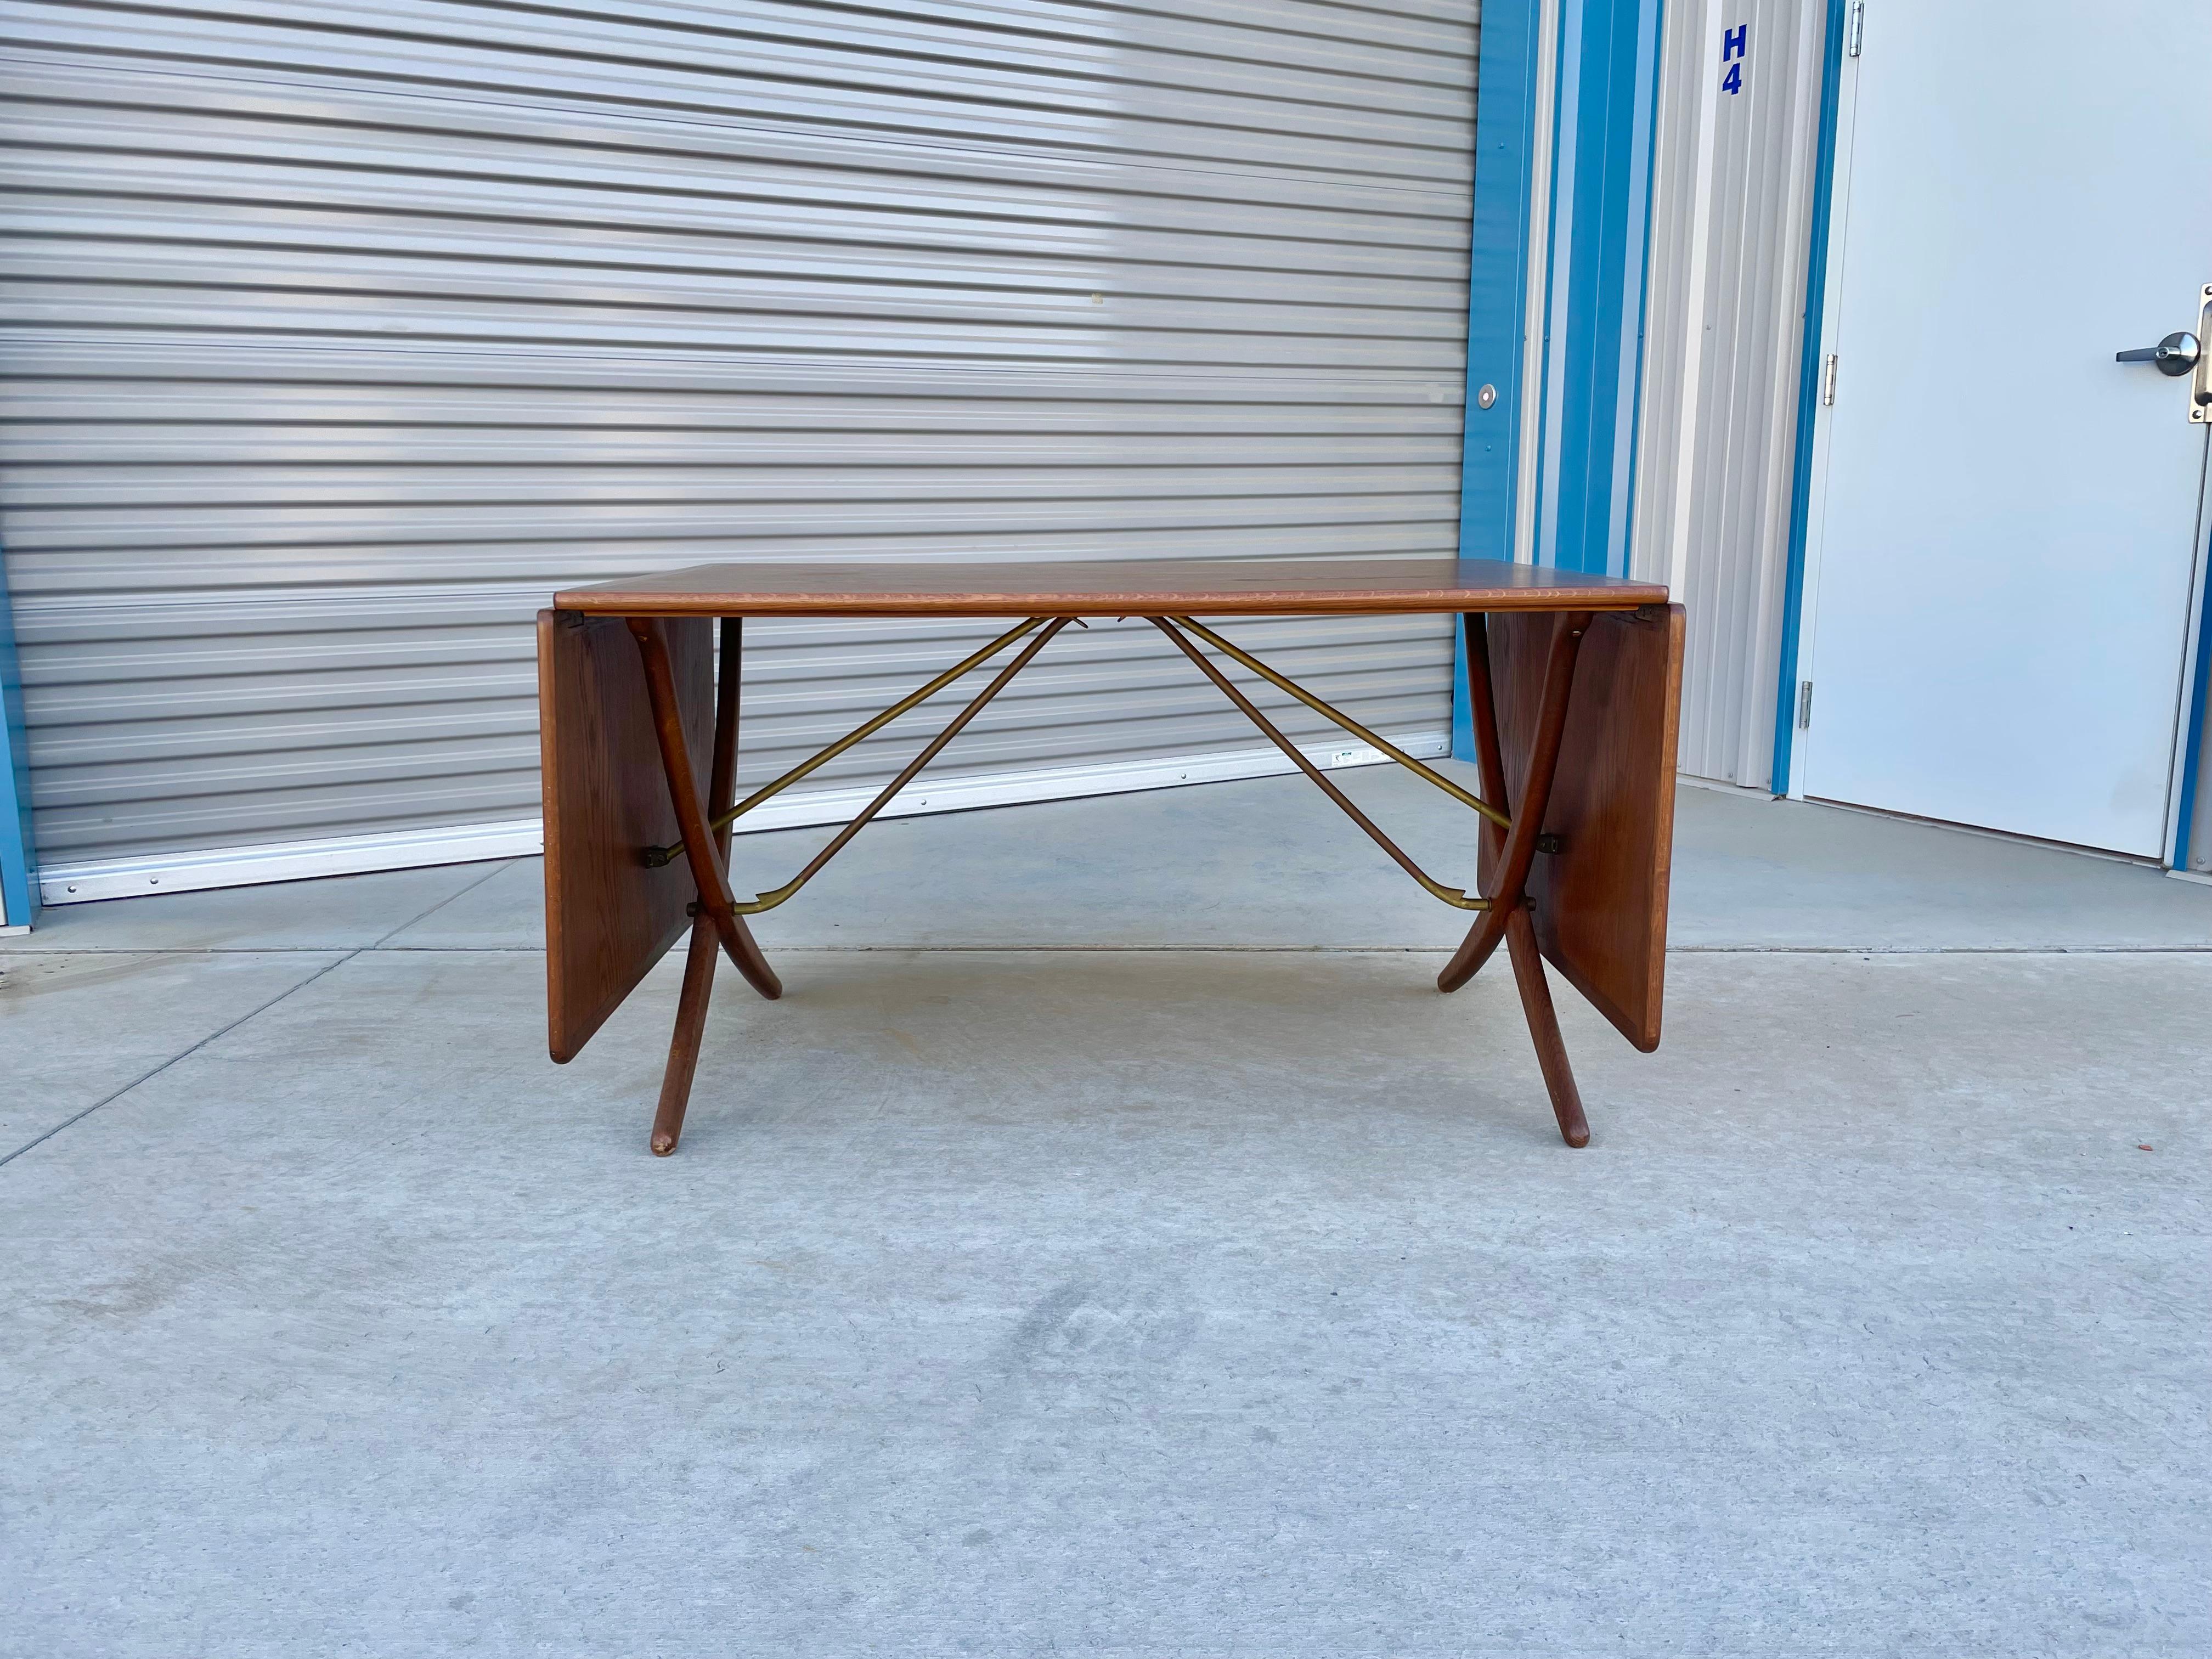 Dänischer Esstisch mit Säbelbeinen, entworfen von Hans J. Wegner für Andreas Tuck in Dänemark im Jahr 1950. Dieser ikonische Tisch AT-304 besteht aus einer Teakholzplatte mit zwei ausklappbaren Blättern. Die architektonischen, gekreuzten Säbelbeine